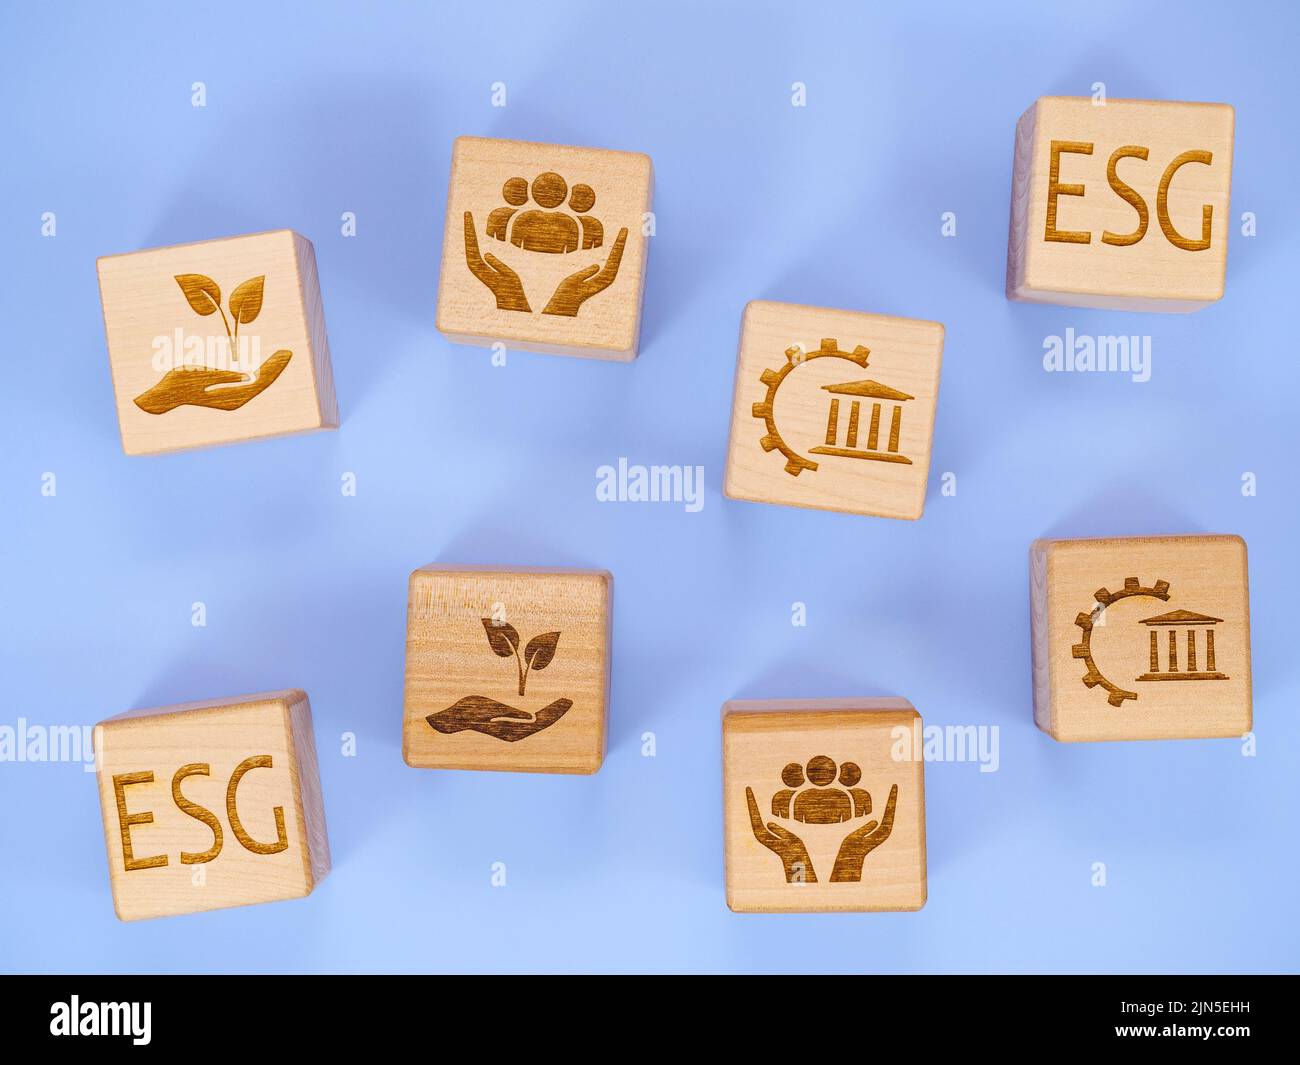 Símbolos ESG en cubos de madera como concepto de conservación ambiental Foto de stock